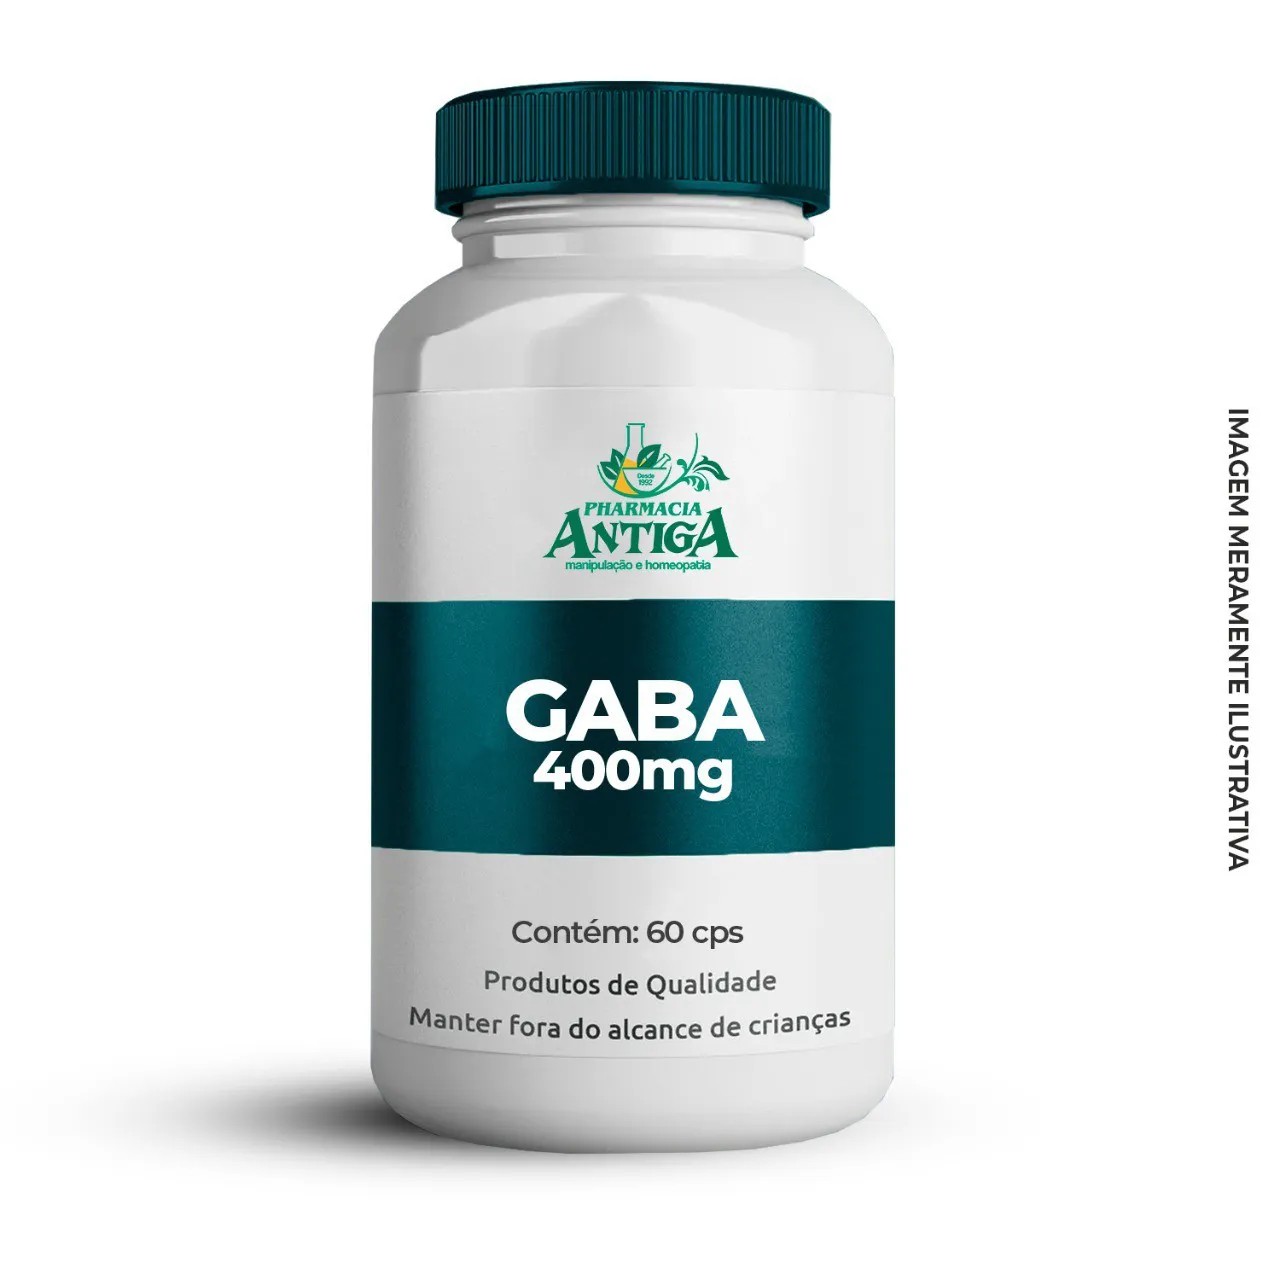 GABA (Acido Gama-aminobutírico) 400 mg 60 cps